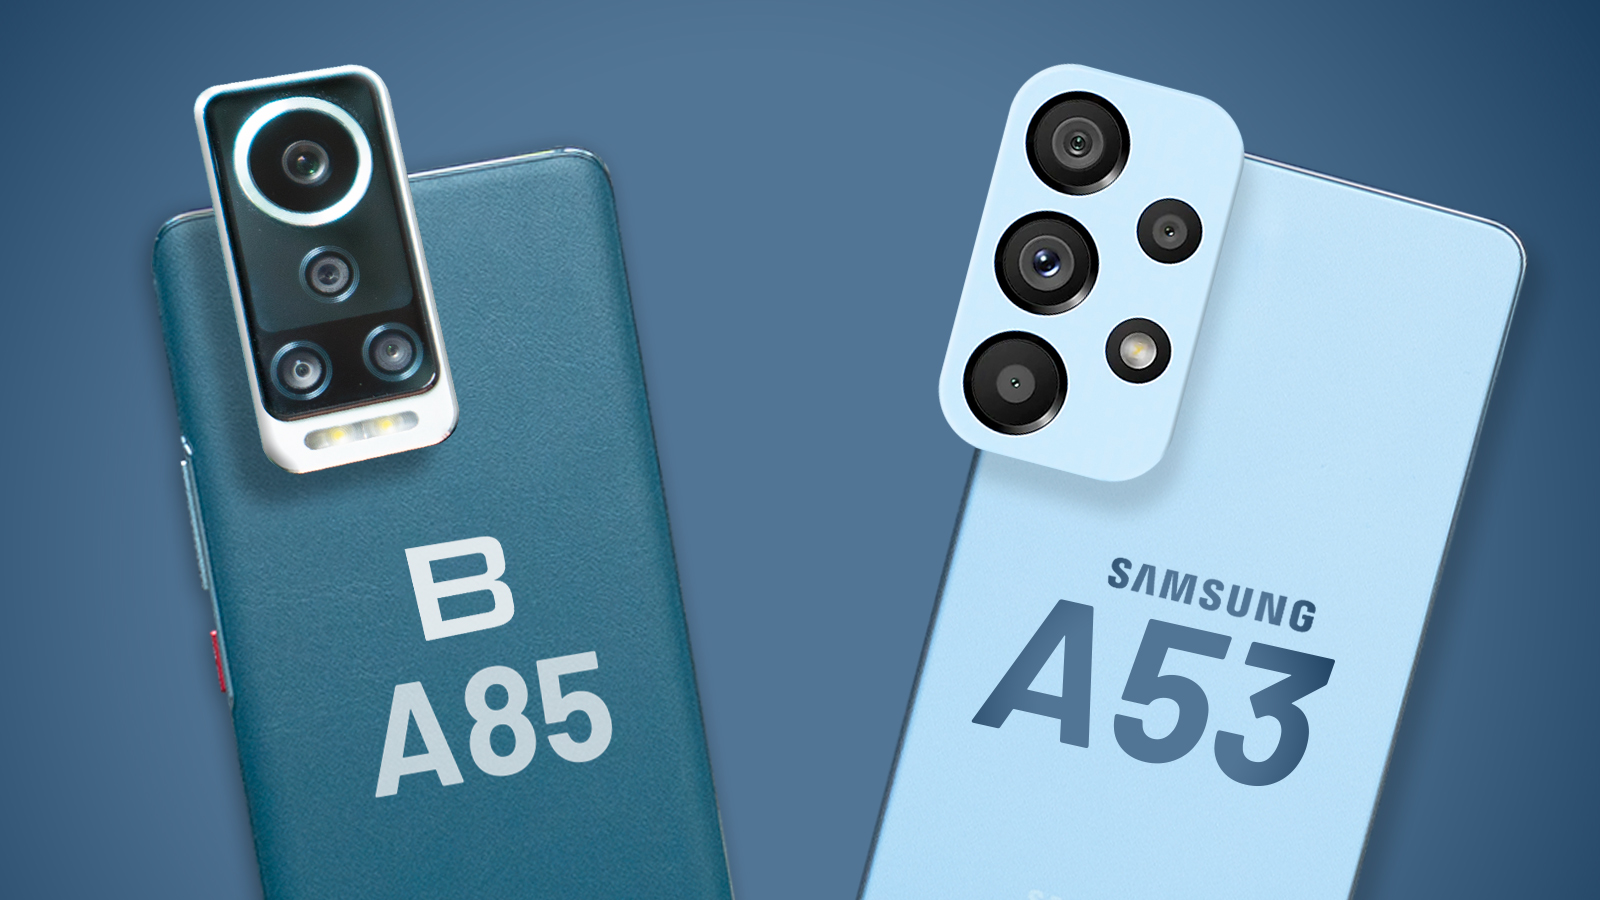 Bình chọn: Bphone A85 hay Galaxy A53 chụp ảnh tốt hơn?